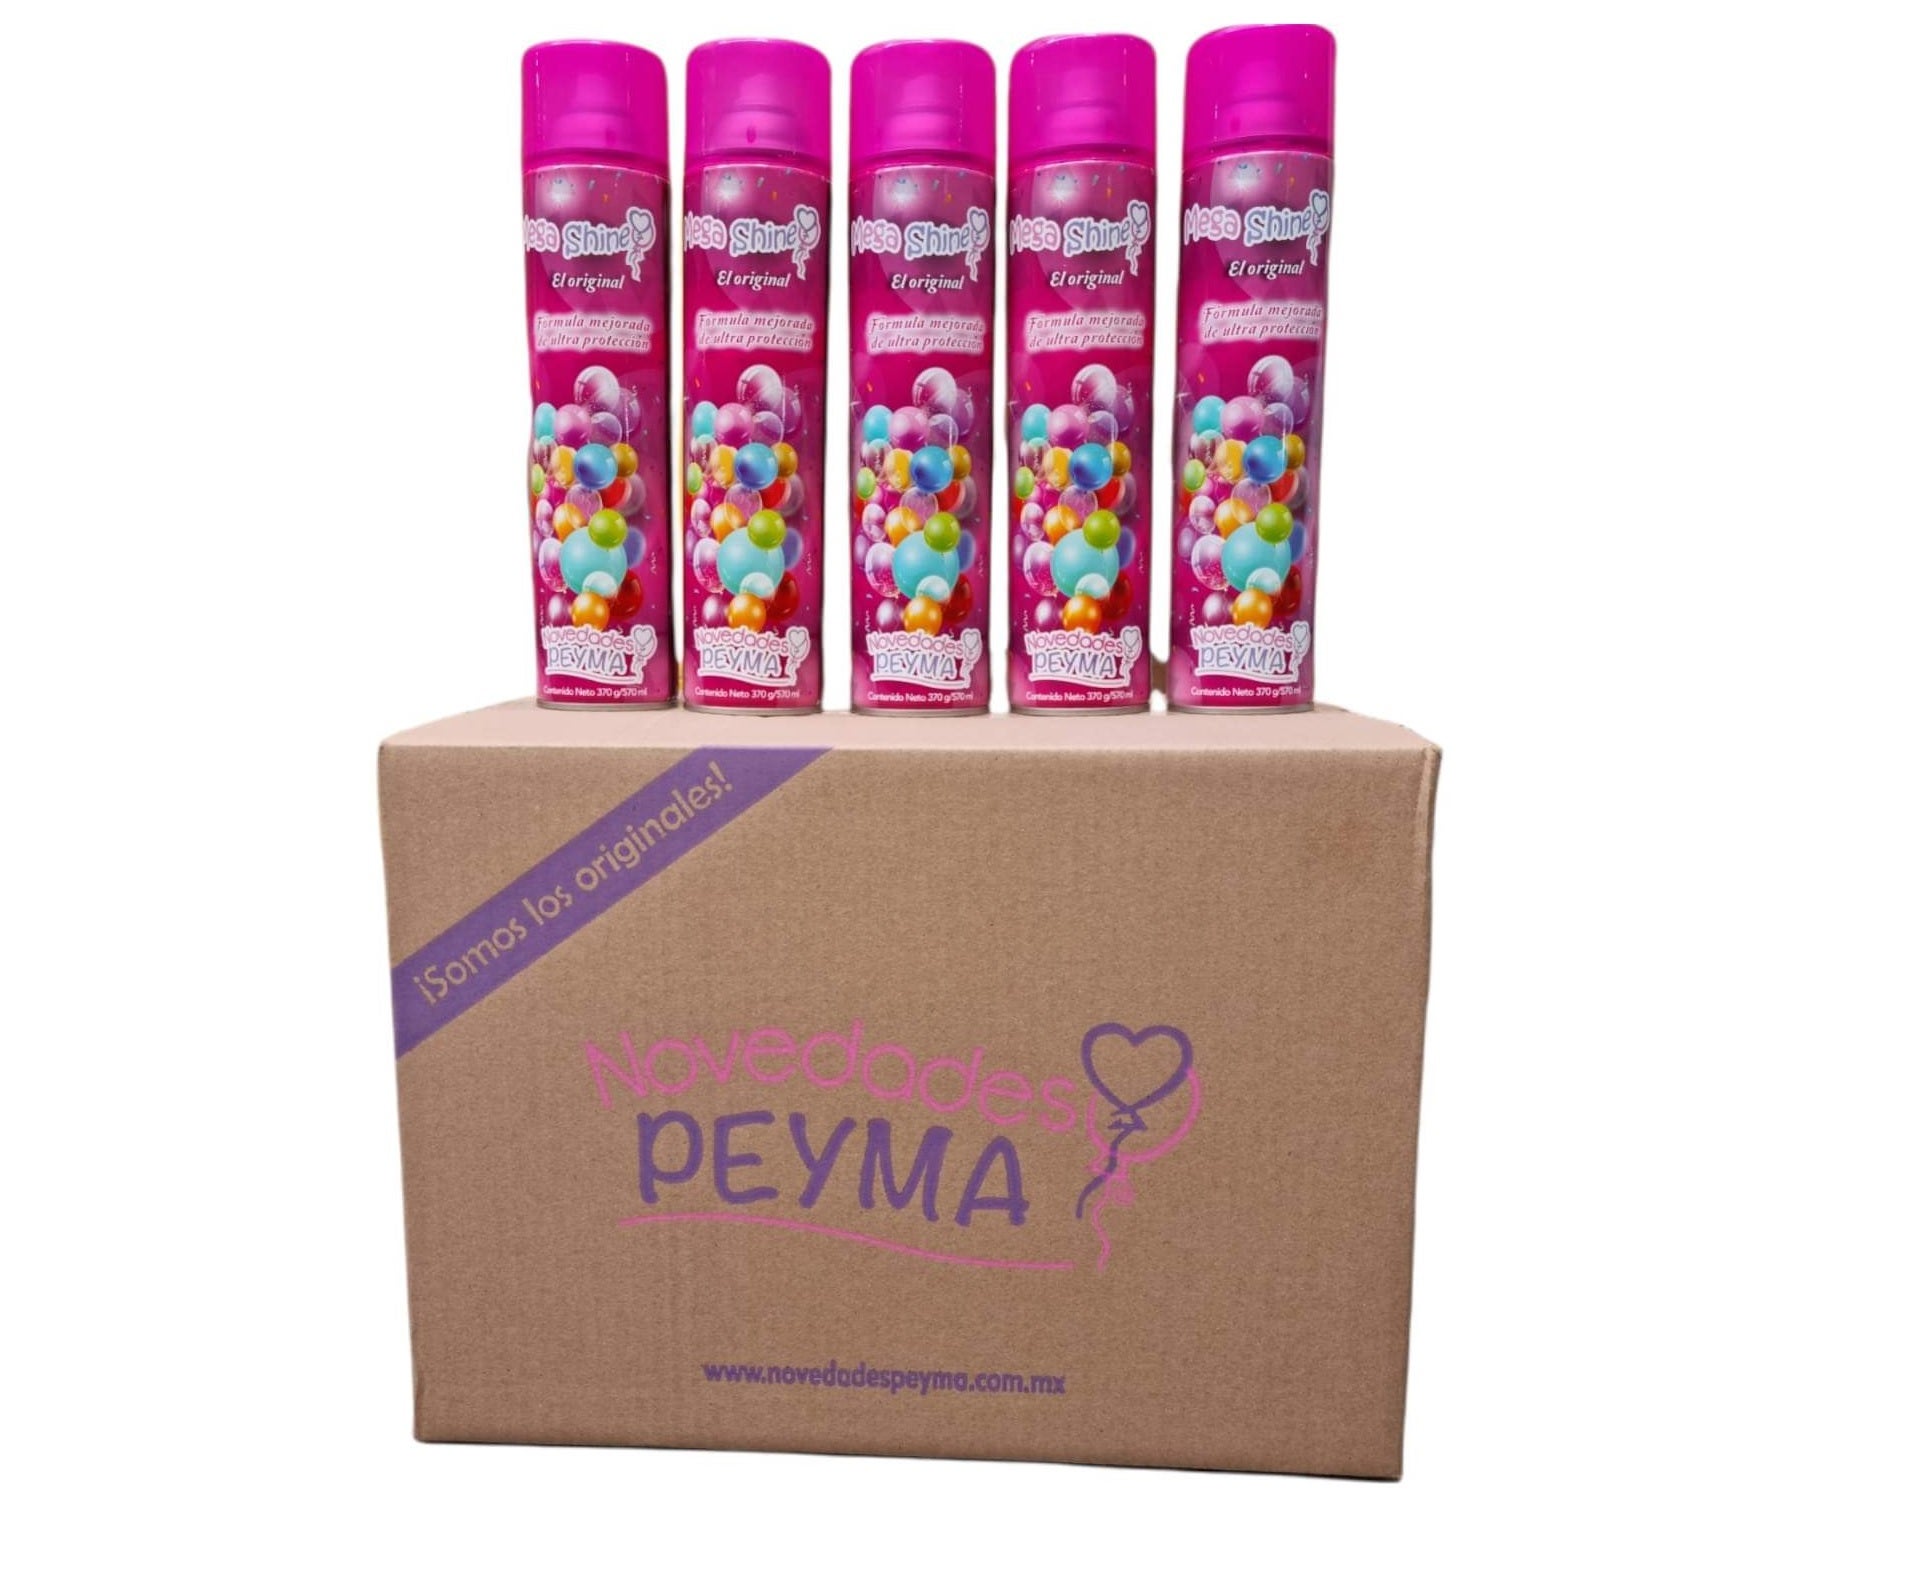 Mega Shine Novedades Peyma Box (24 Pcs) – City Balloons